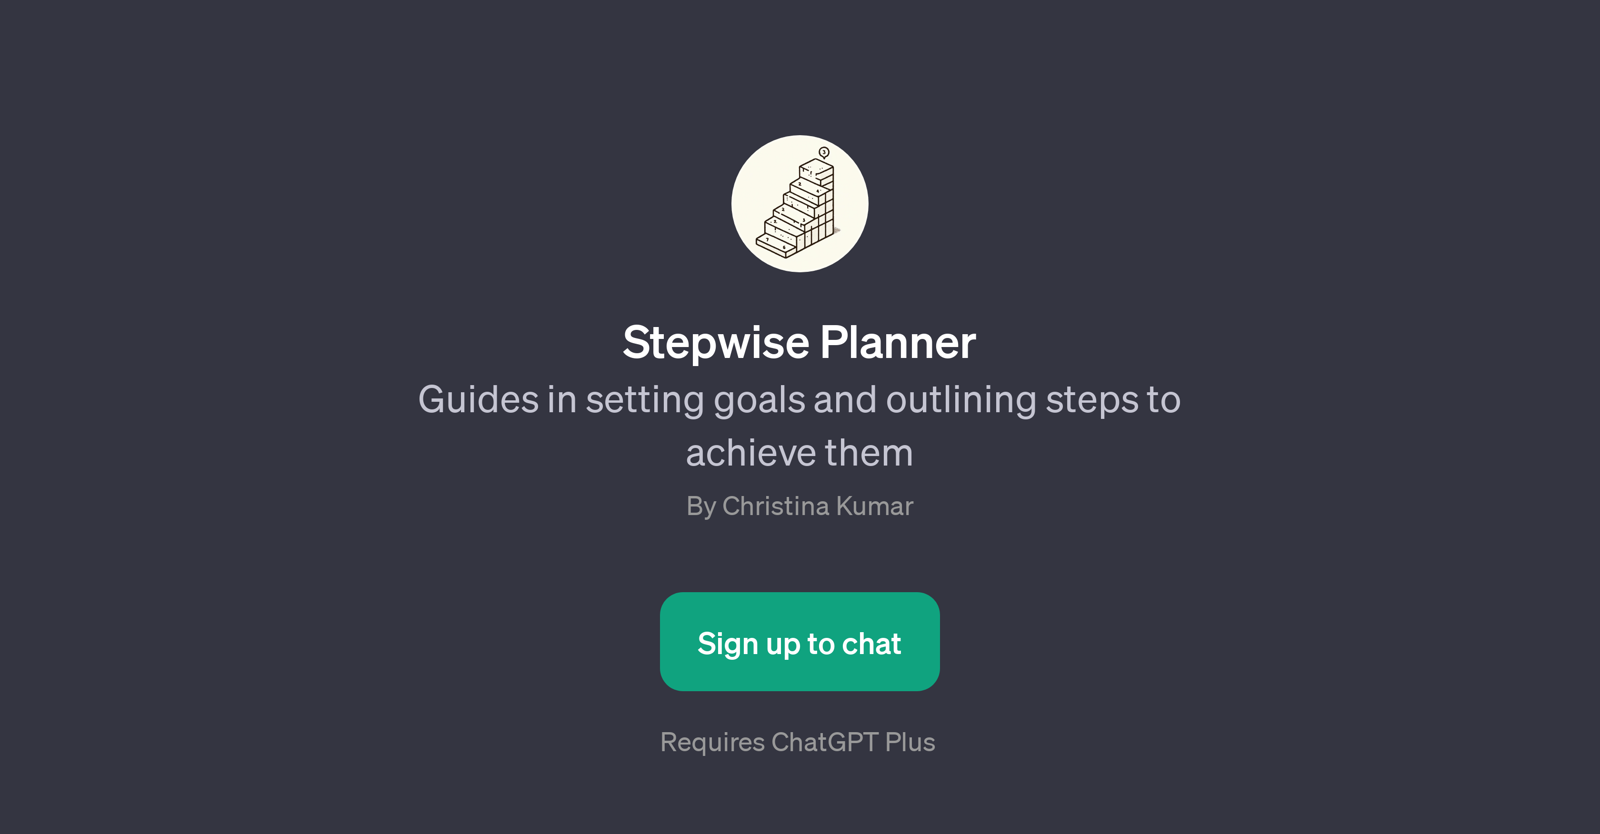 Stepwise Planner website